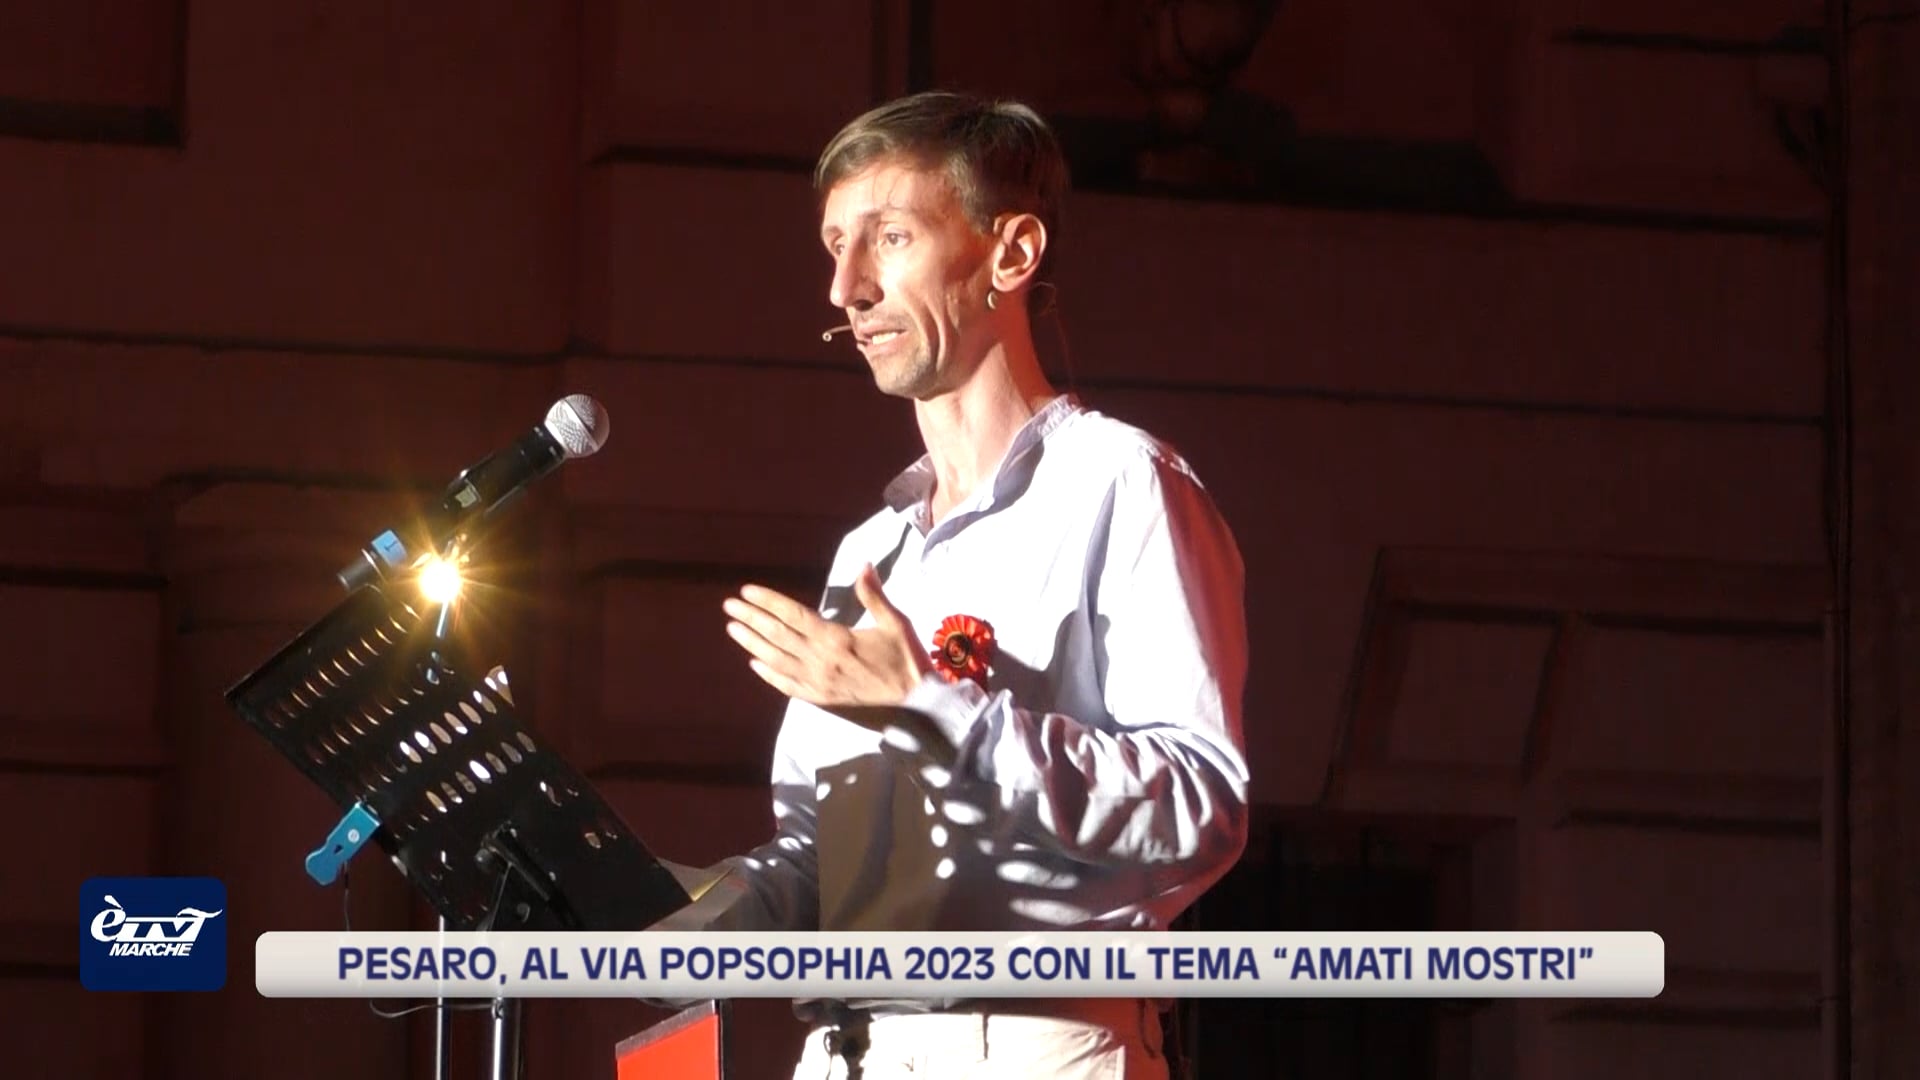 Pesaro, al via Popsophia 2023 con il tema “Amati Mostri” - VIDEO